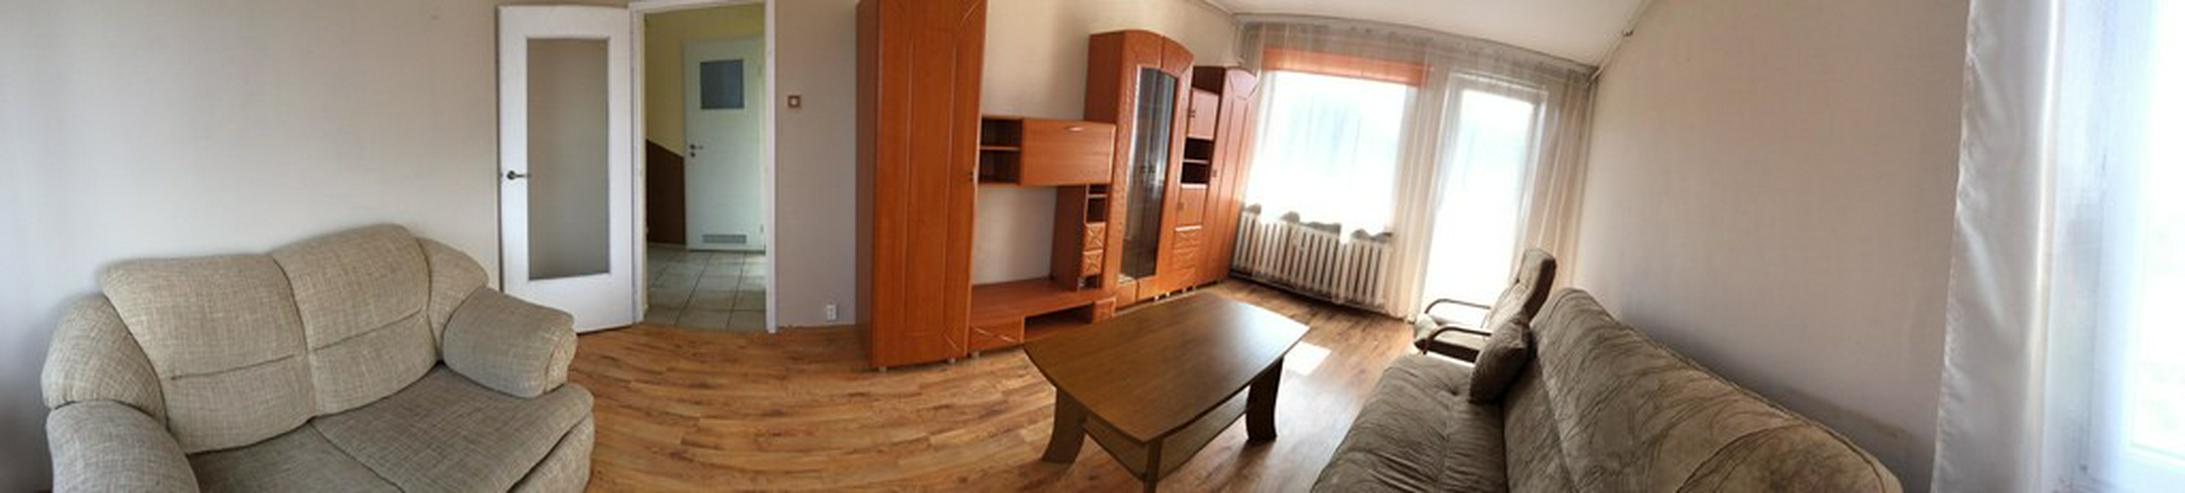 Bild 9: Wohnung in Zielona Gora (Polen)